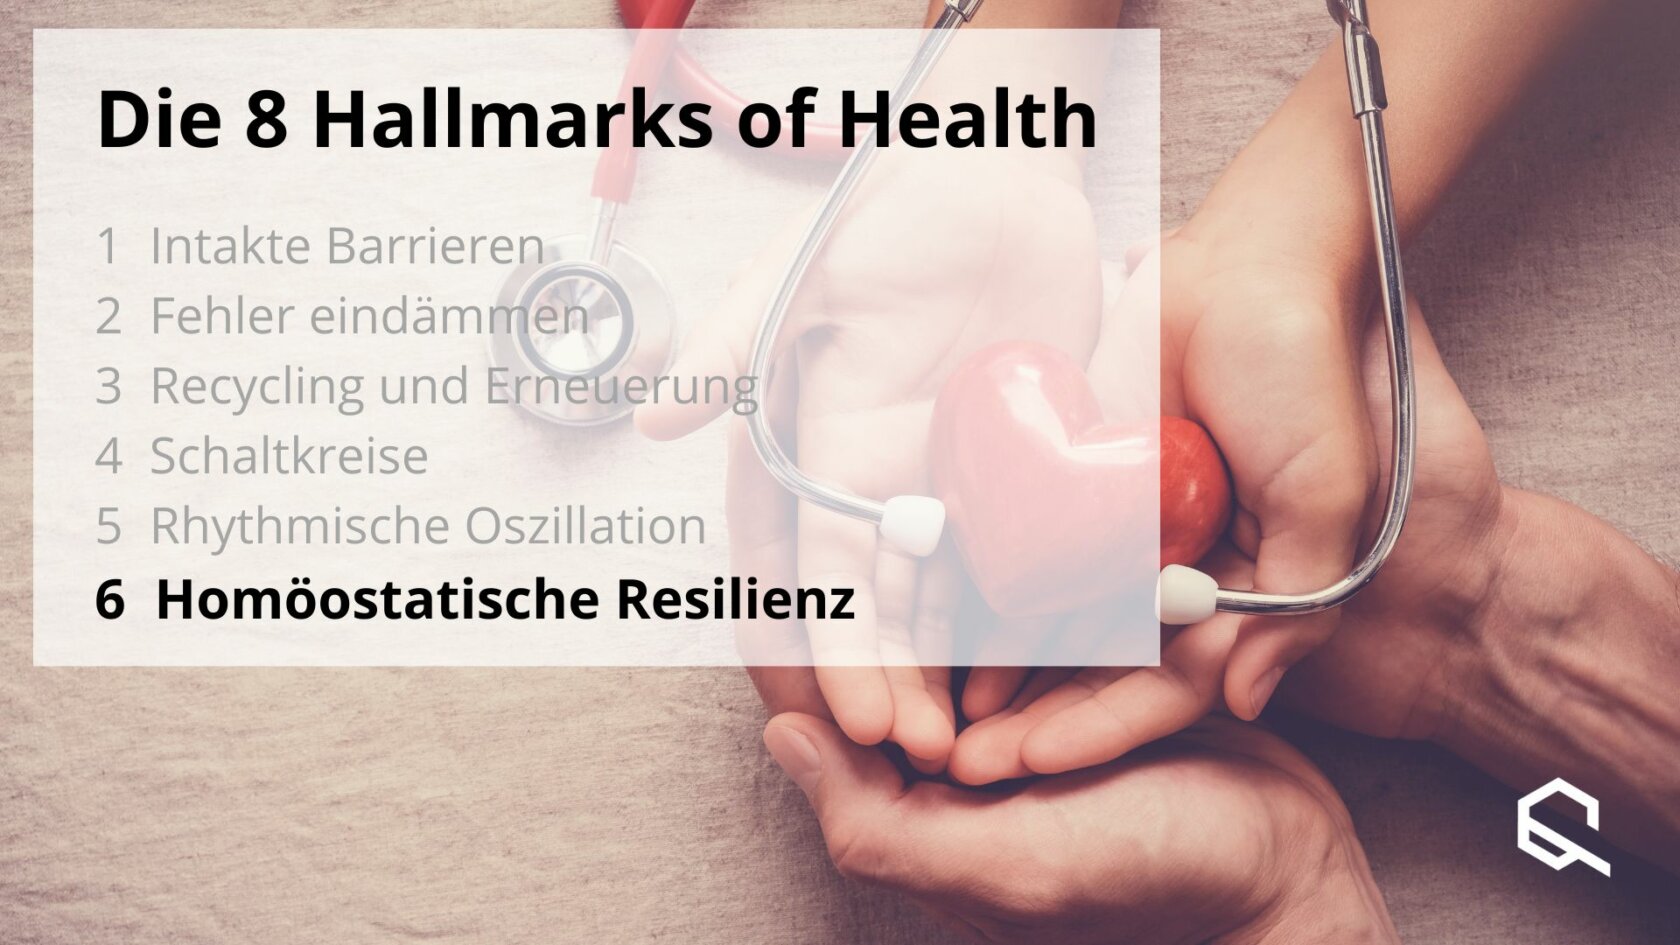 Homöostatische Resilienz Artikelbild Hallmarksofhealth